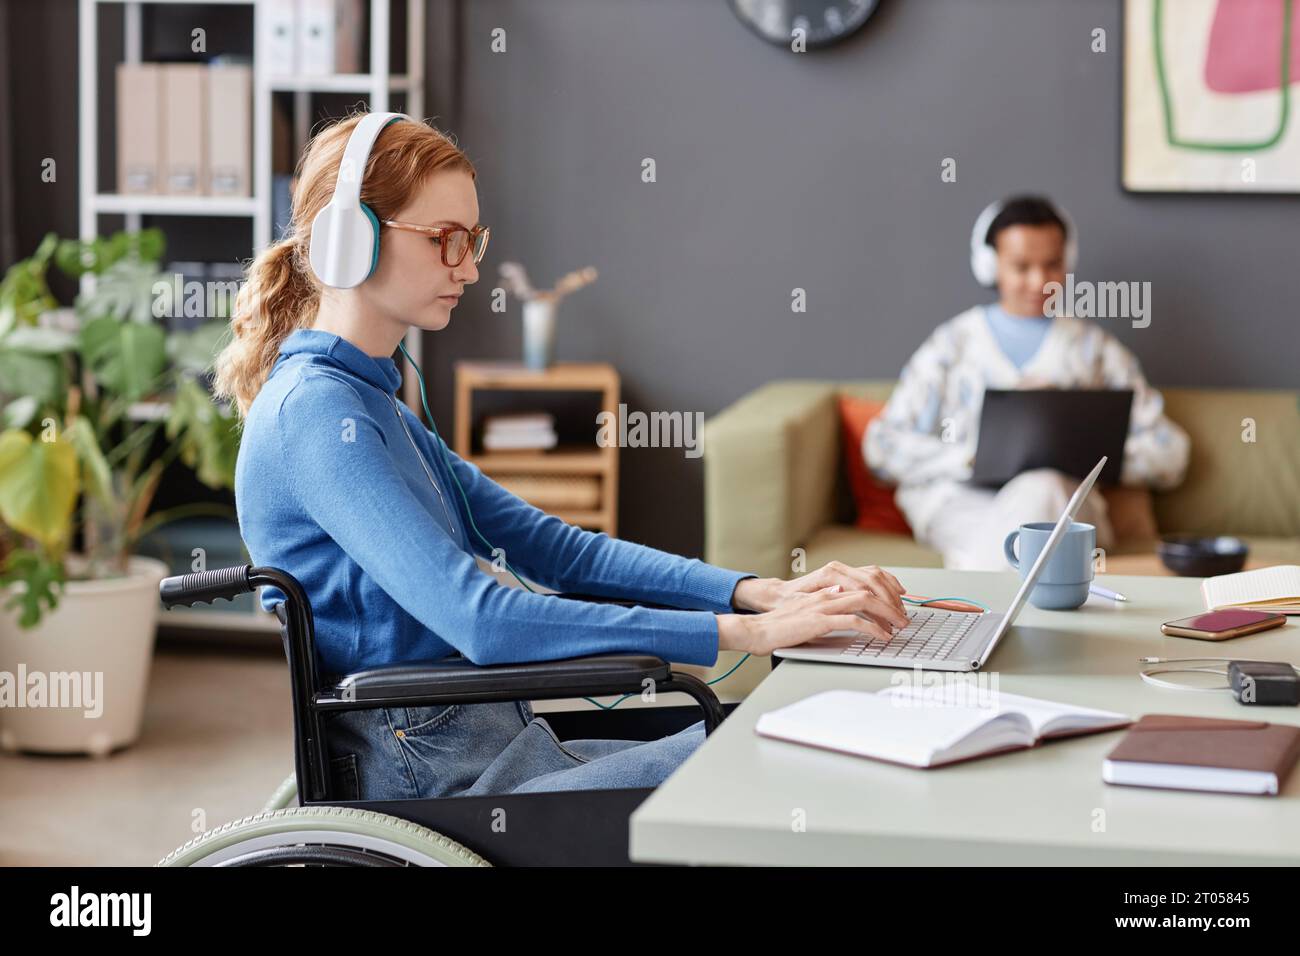 Ritratto laterale di una giovane donna dai capelli rossi con disabilità che utilizza il computer mentre lavora in un'azienda IT, copia spazio Foto Stock